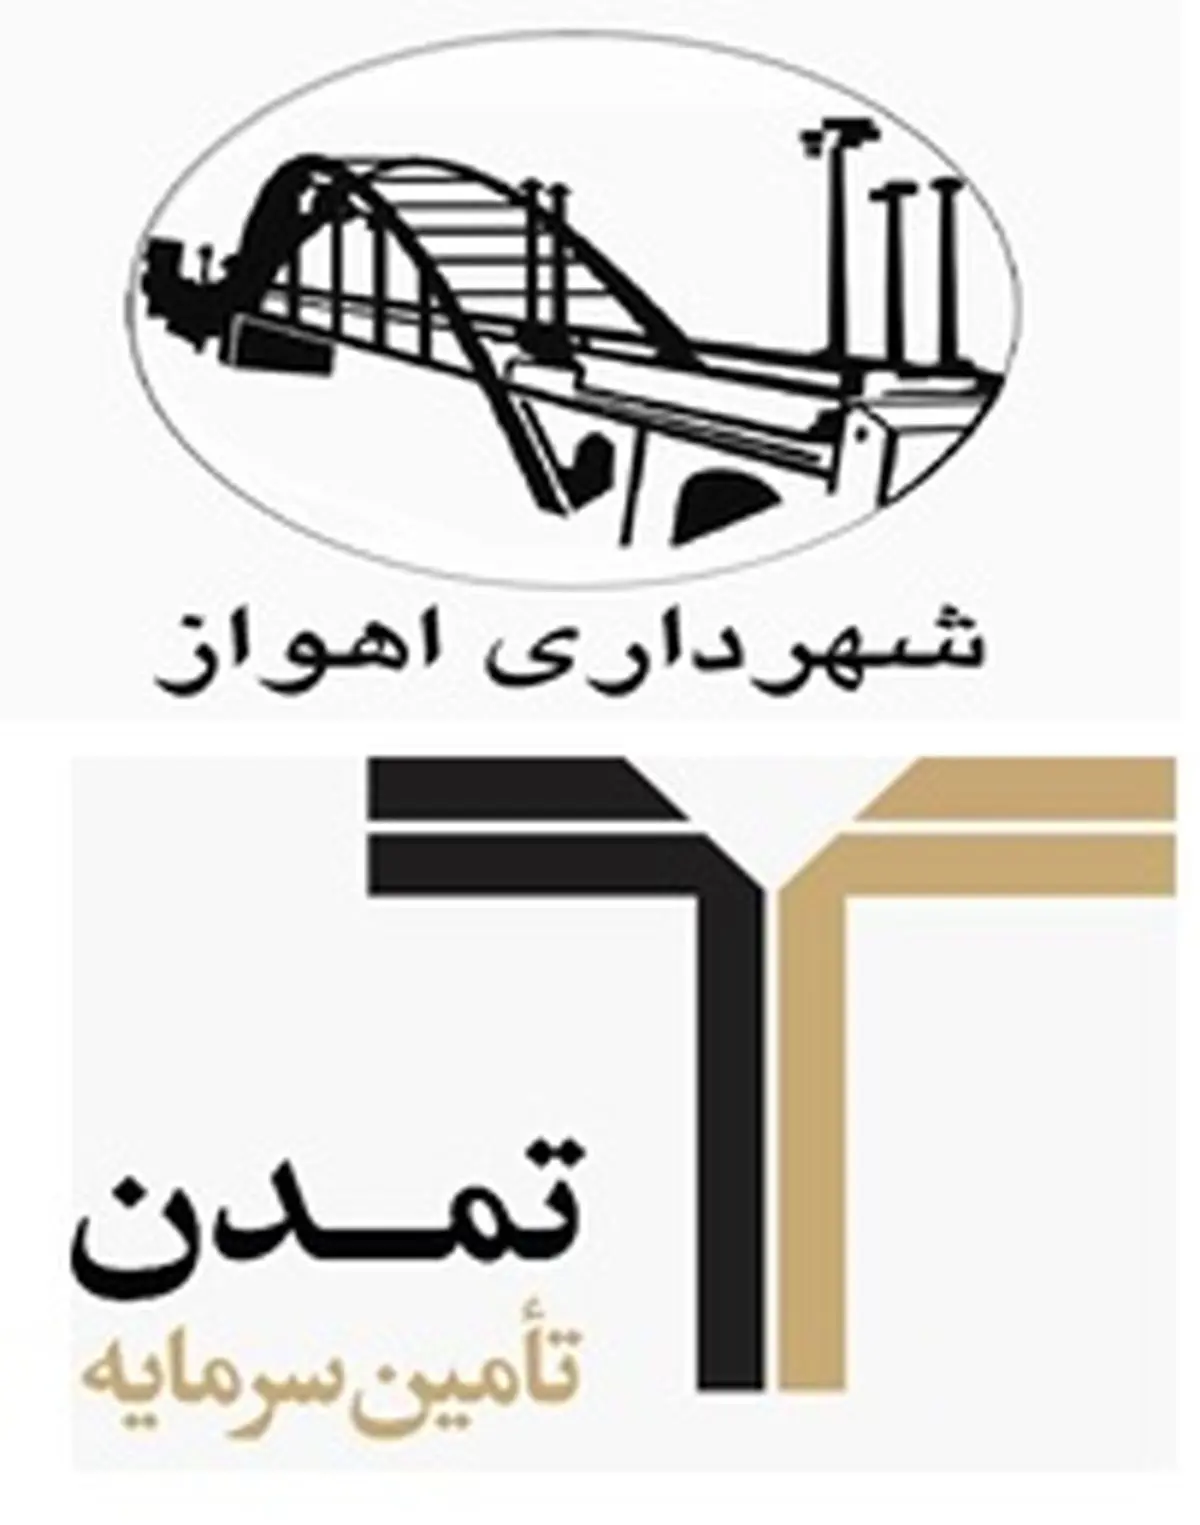 درج اوراق مشارکت شهرداری اهواز برای اولین بار در بورس اوراق بهادار تهران